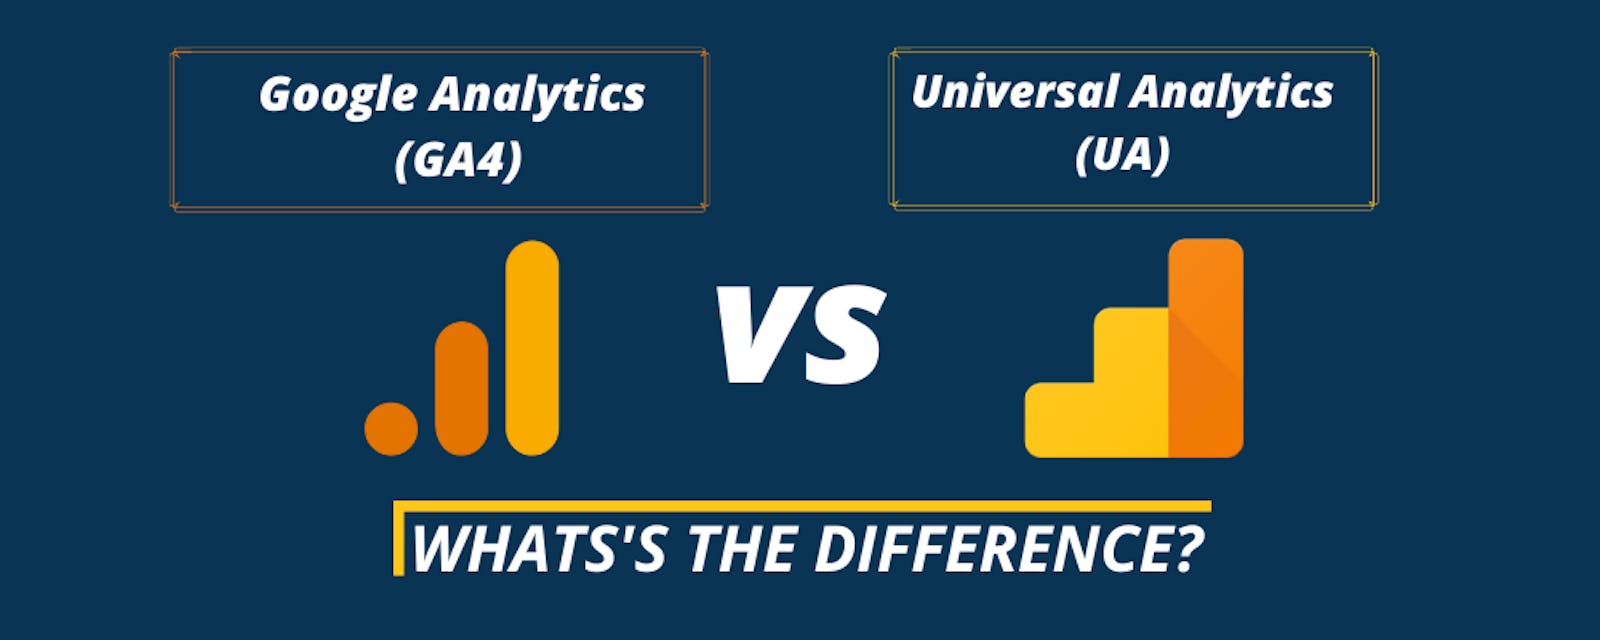 Google Analytics 4 Vs Universal Analytics: What's The Difference